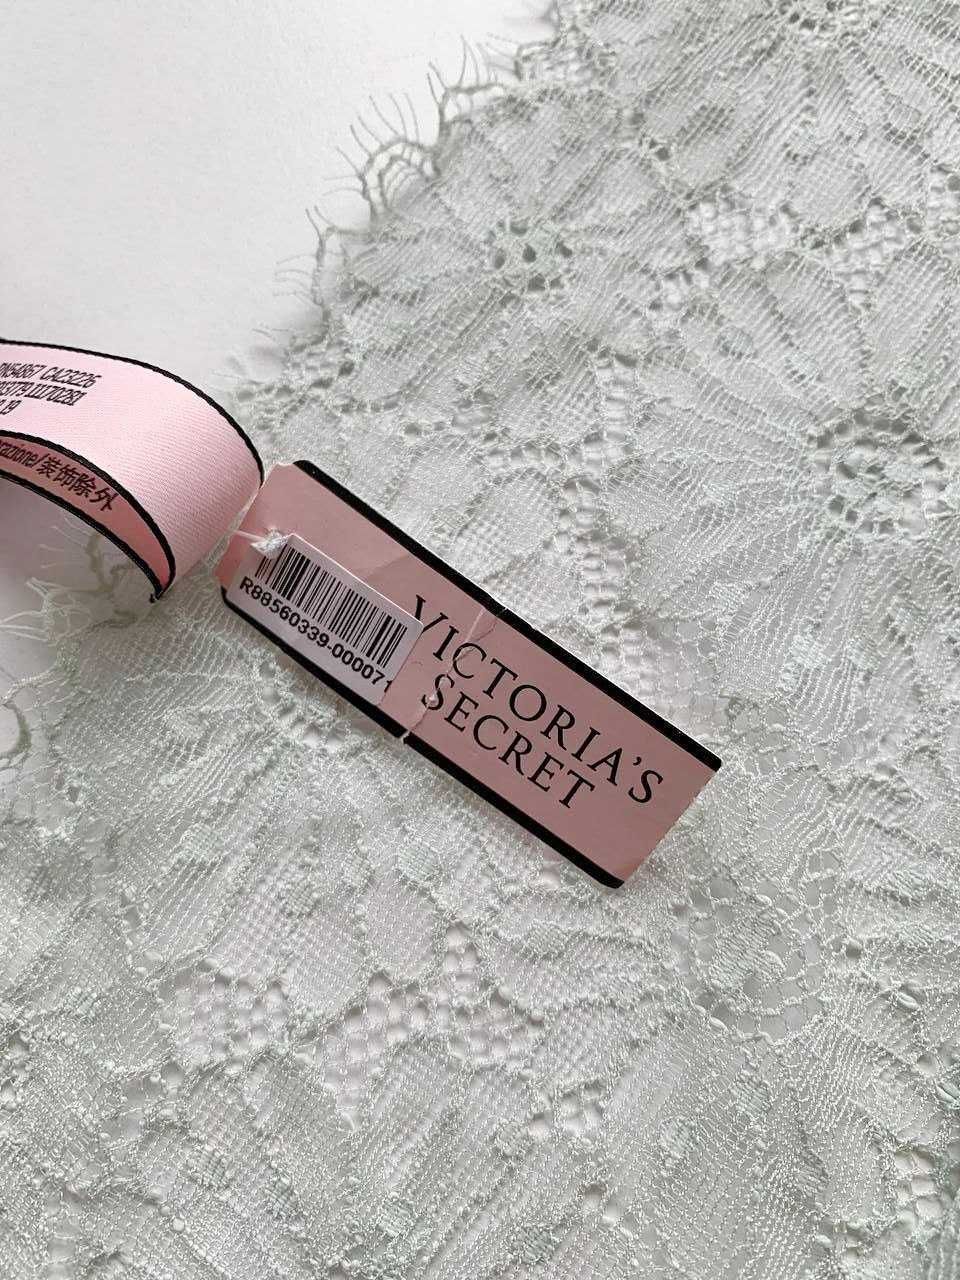 ОРИГИНАЛ Новое кружевное белье Victoria's Secret с этикеткой, стринги